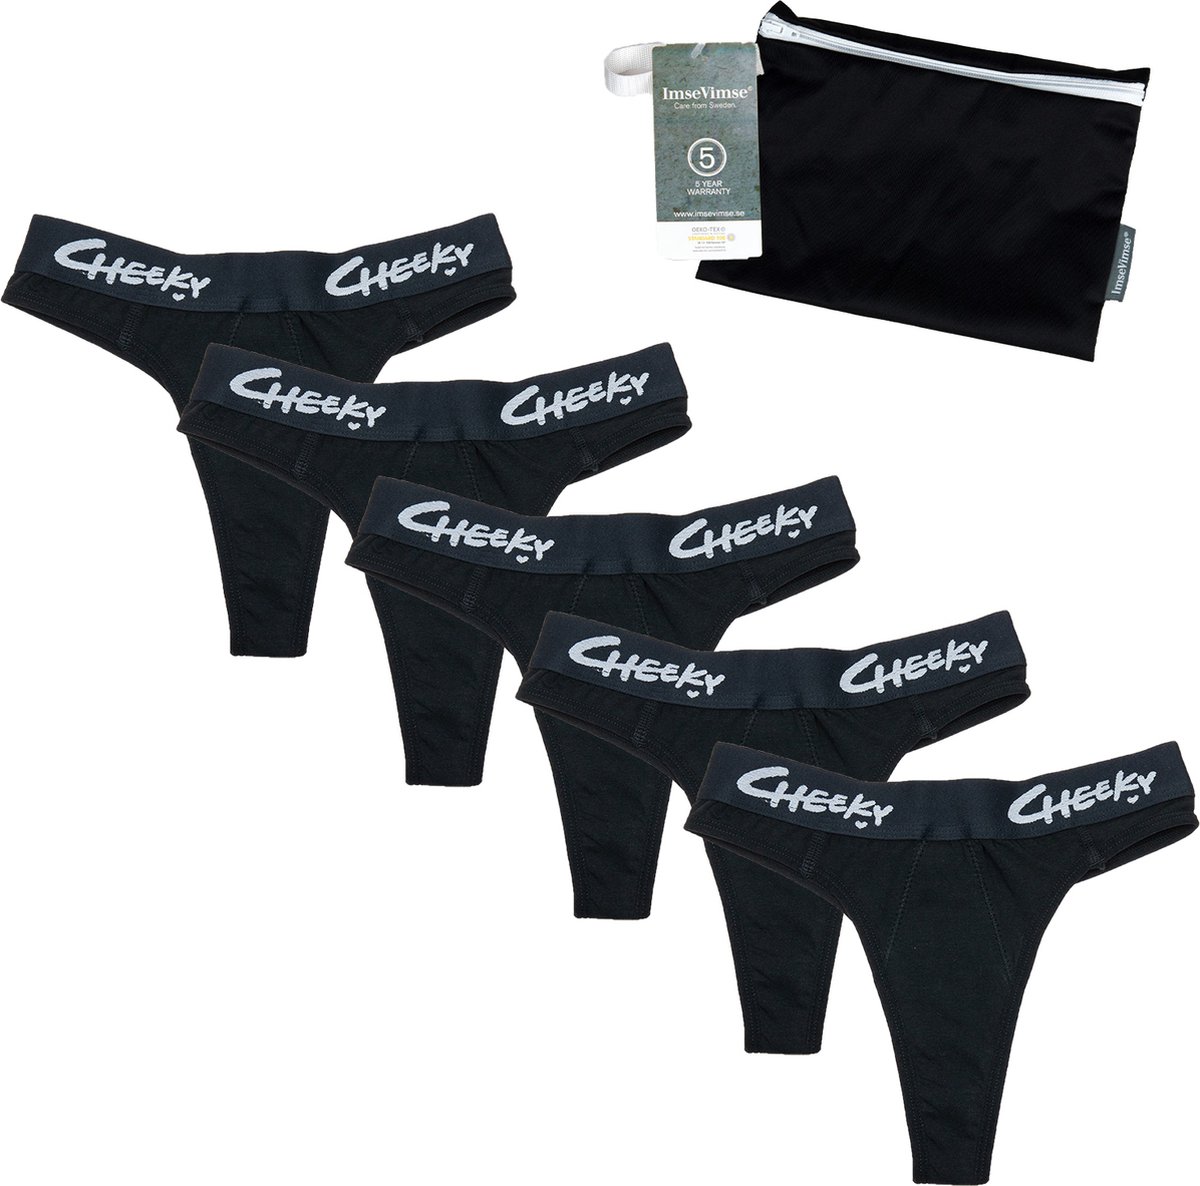 Cheeky Pants Feeling Limitless - Set van 5 + Wetbag - Maat 44 - Zwart - Cheeky Pants Menstruatieondergoed - Zero waste product - Absorberend - Comfortabel